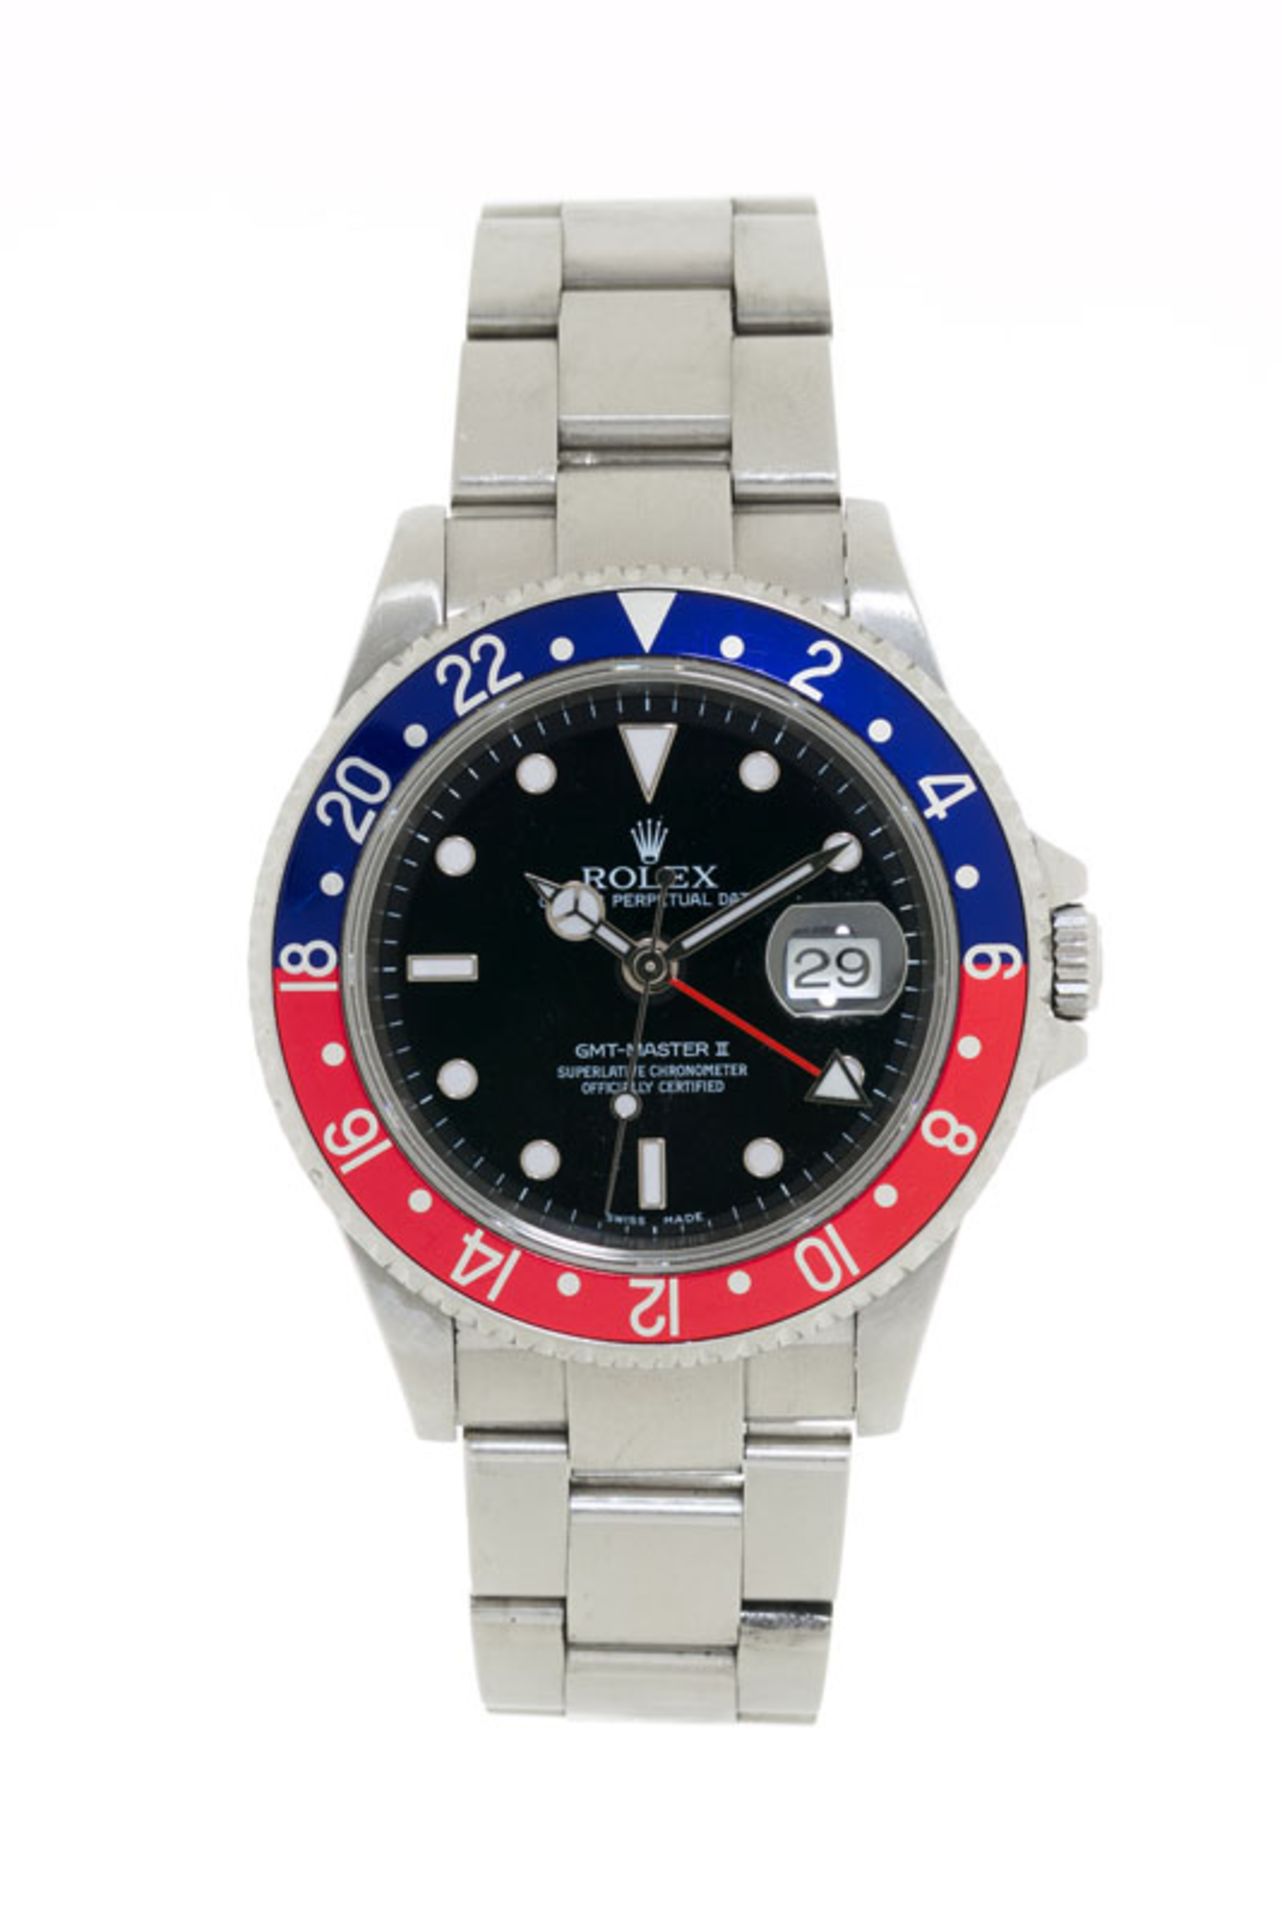 Rolex, GMT Master II, réf. 16710/2180, montre-bracelet en acier avec indication de la date, garantie